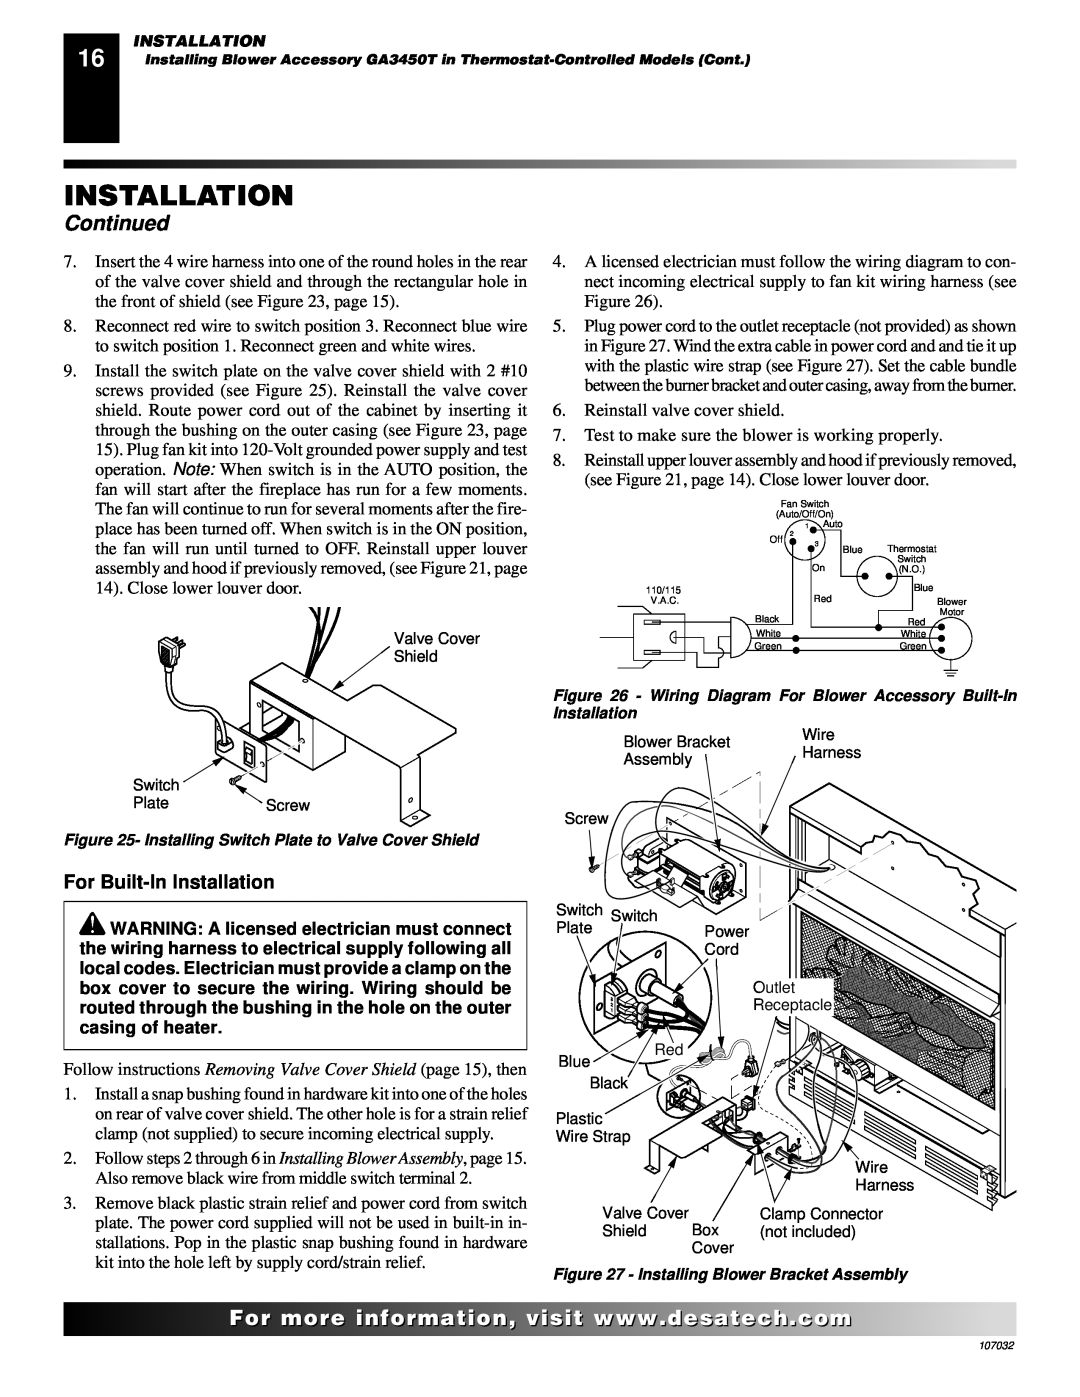 Desa VMH10TPB installation manual Continued, For Built-InInstallation, Reinstall valve cover shield 